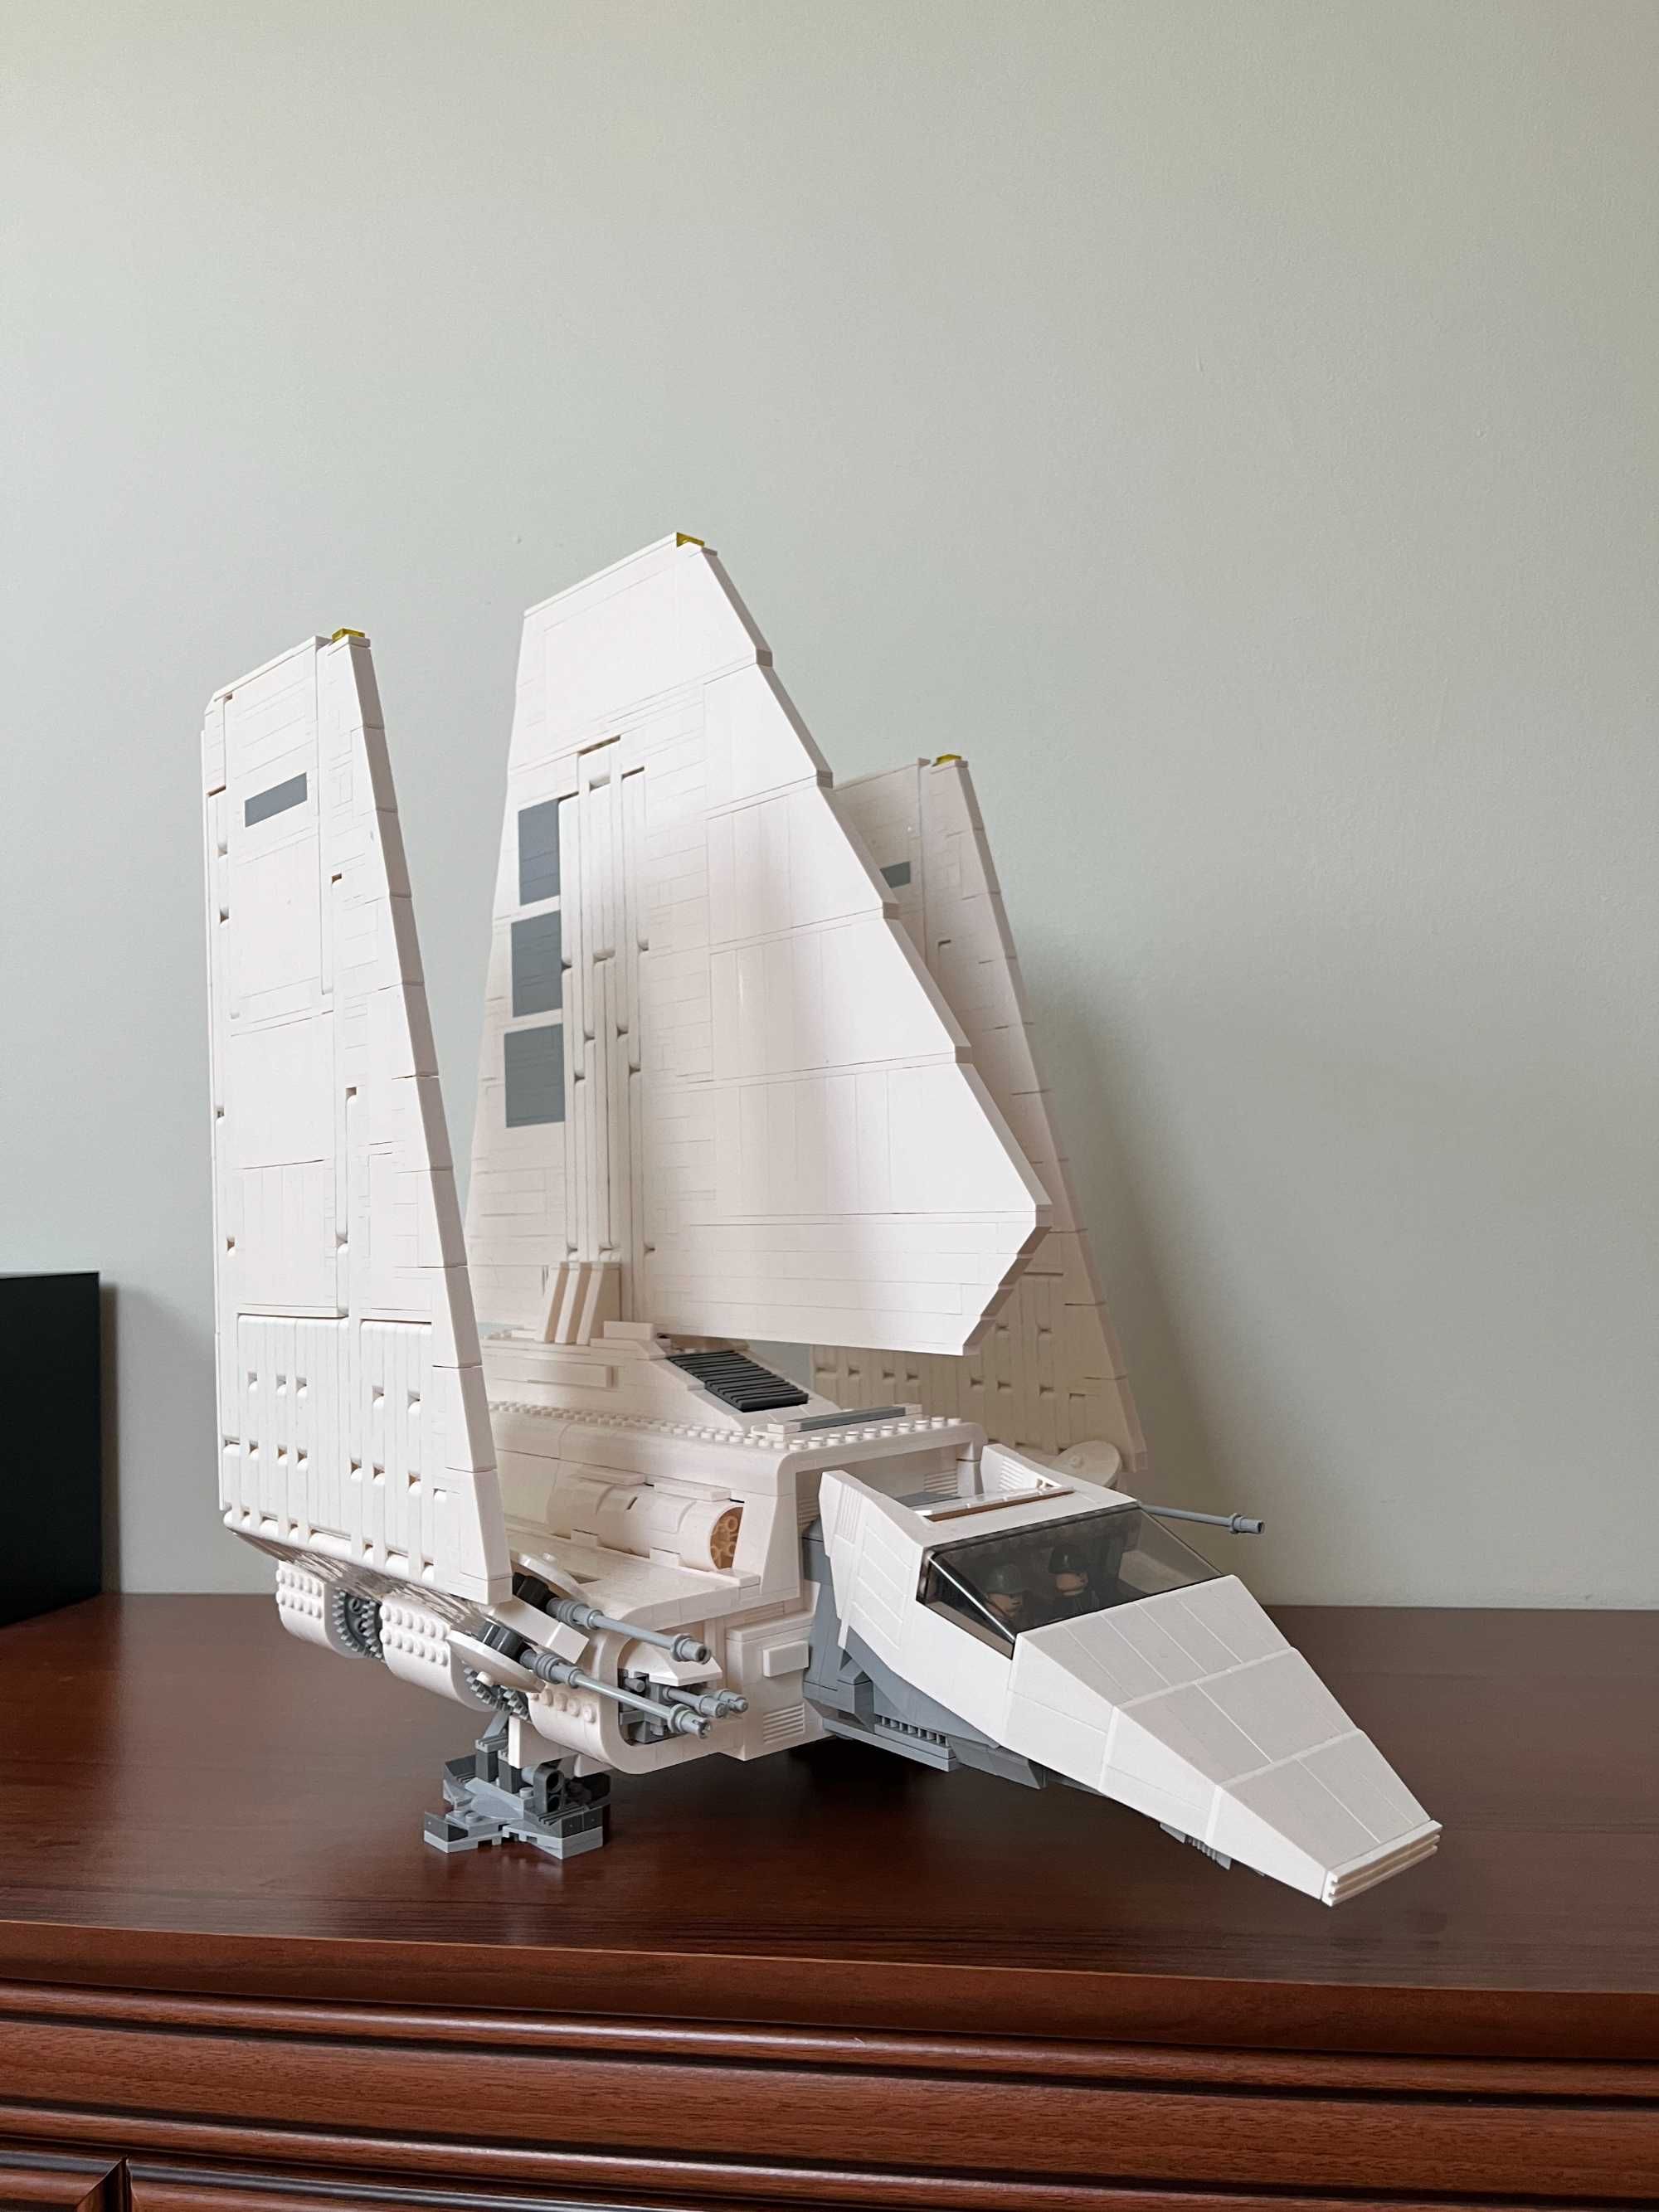 Klocki Star Wars Imperial Shuttle Wahadłowiec Imperium, komp. z LEGO